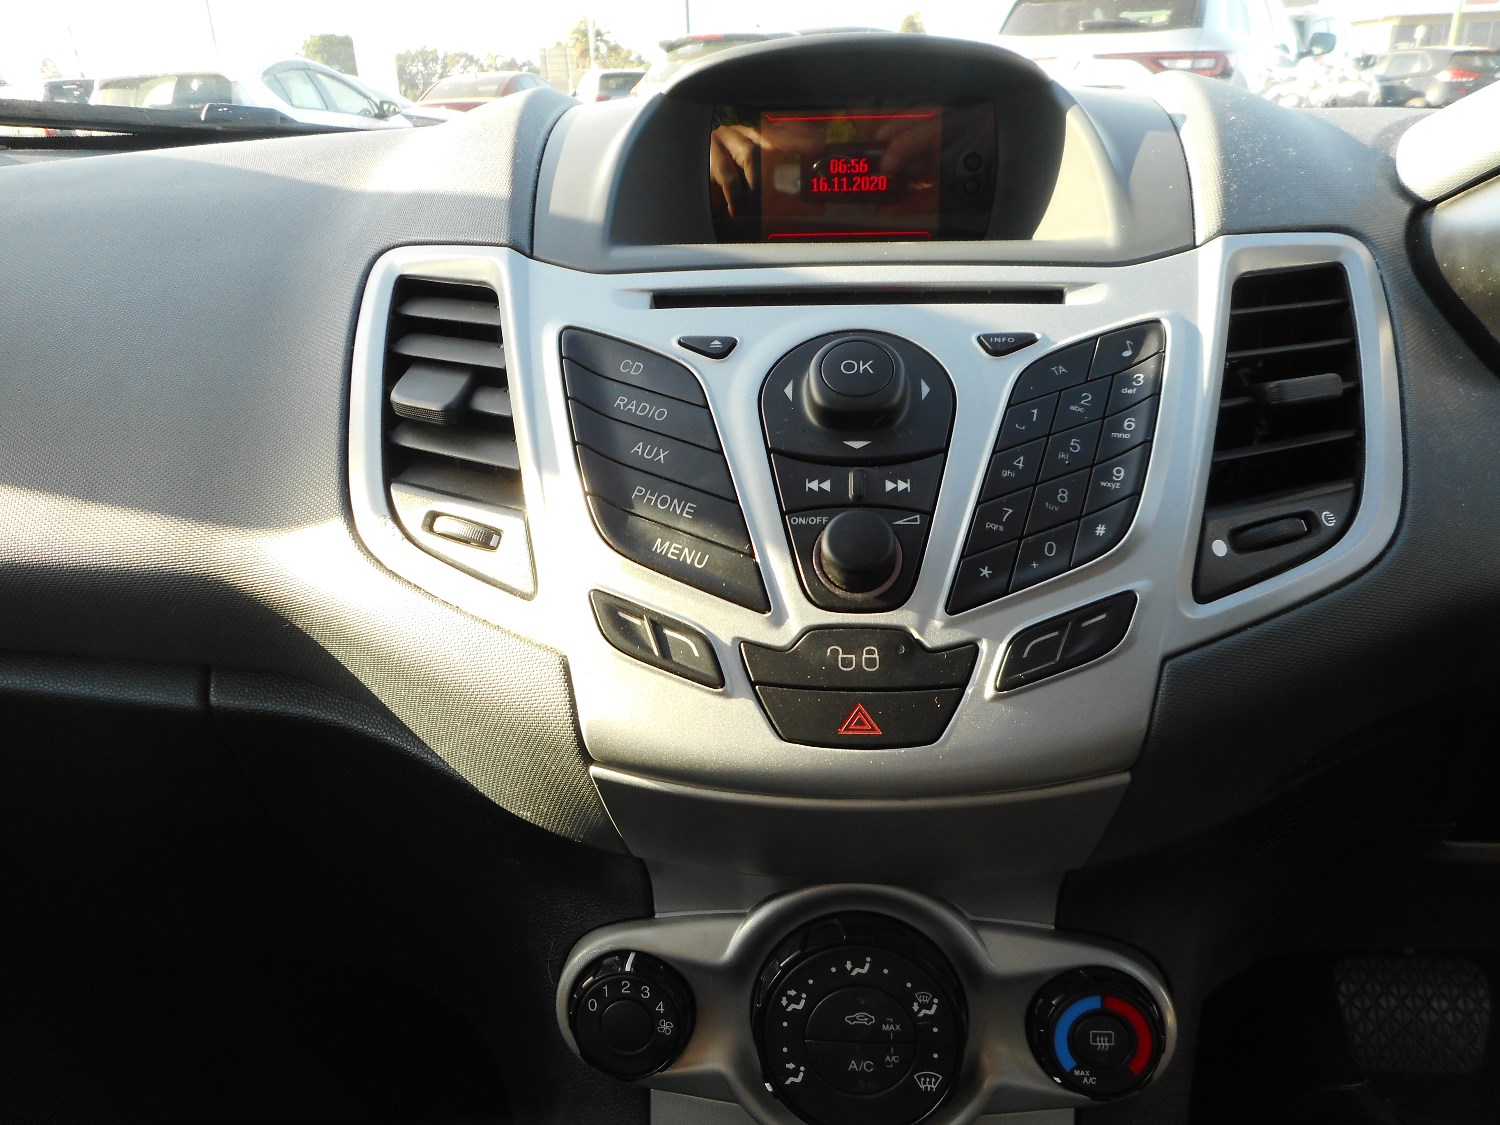 2012 Ford Fiesta WT LX Hatchback Image 17